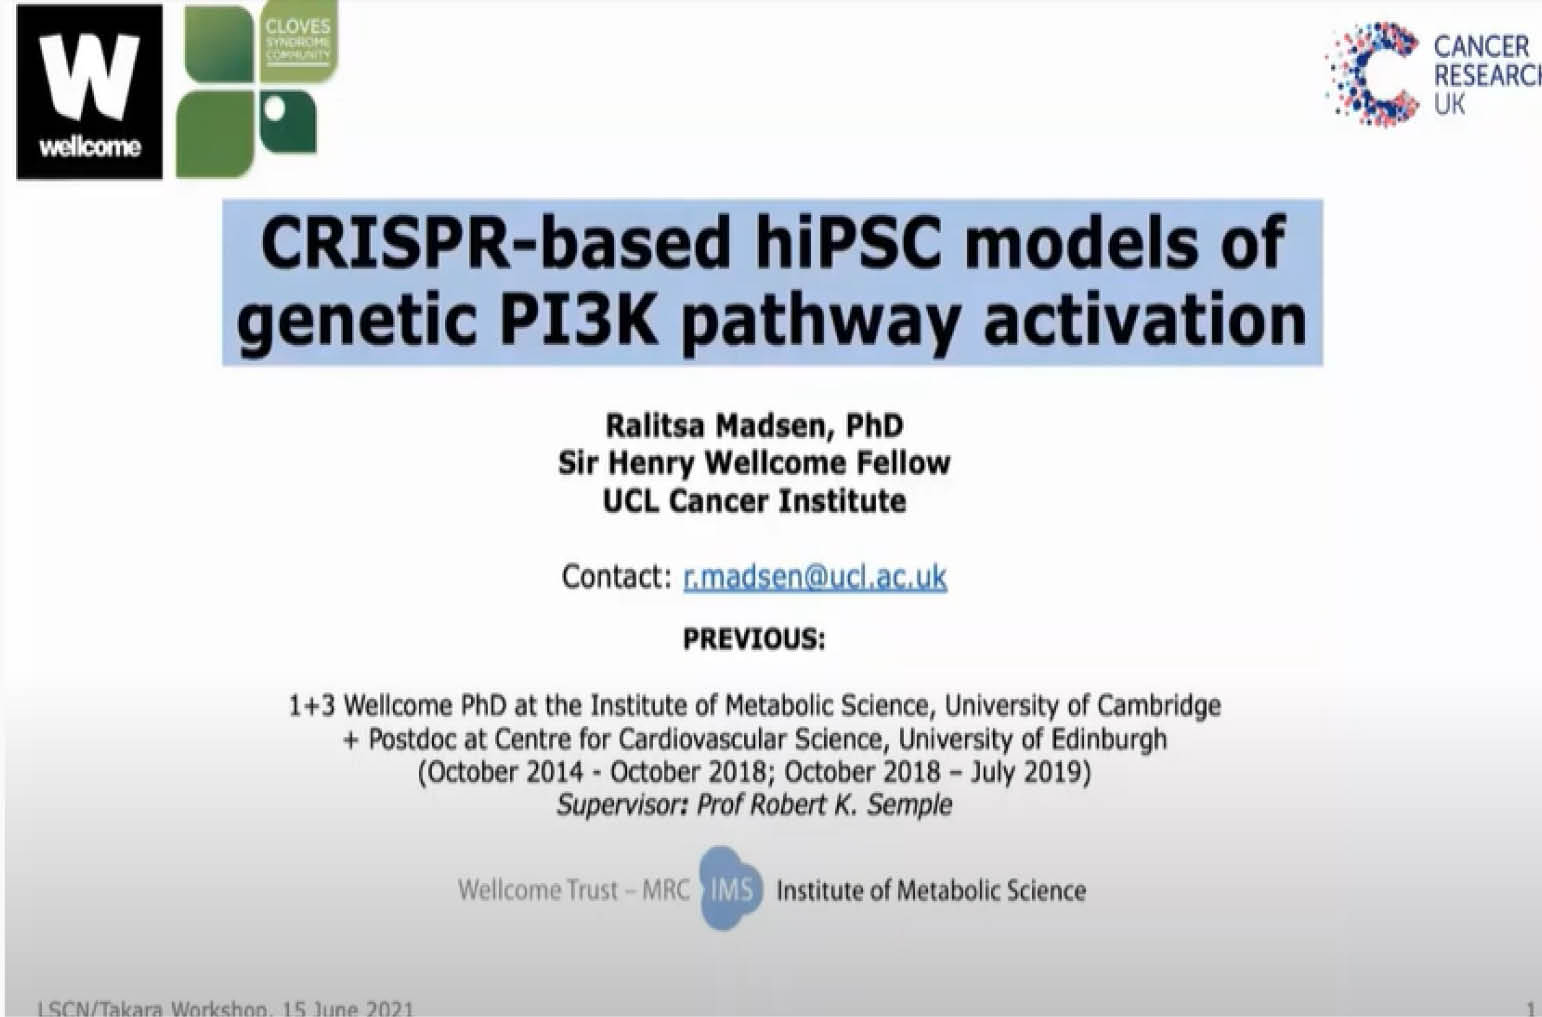 r Ralitsa Madsen, CRISPR based hiPSC models of genetic PI3K pathway activation